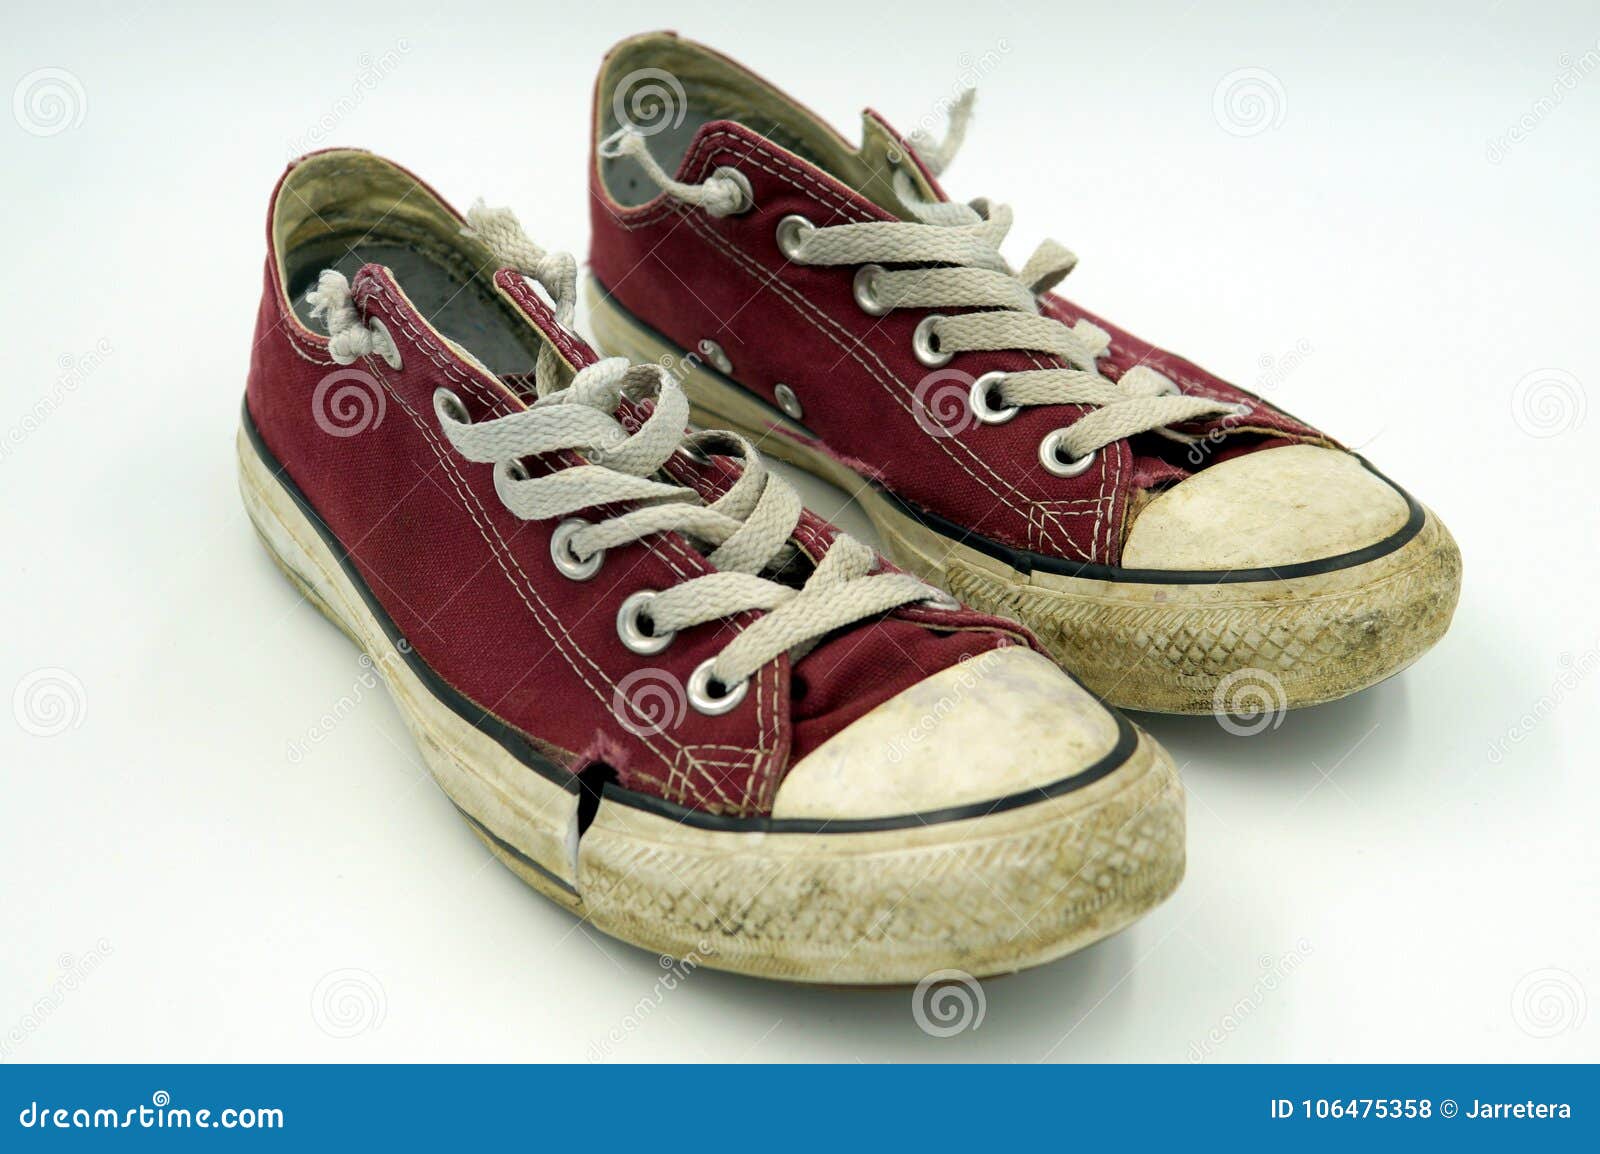 old vintage shoes